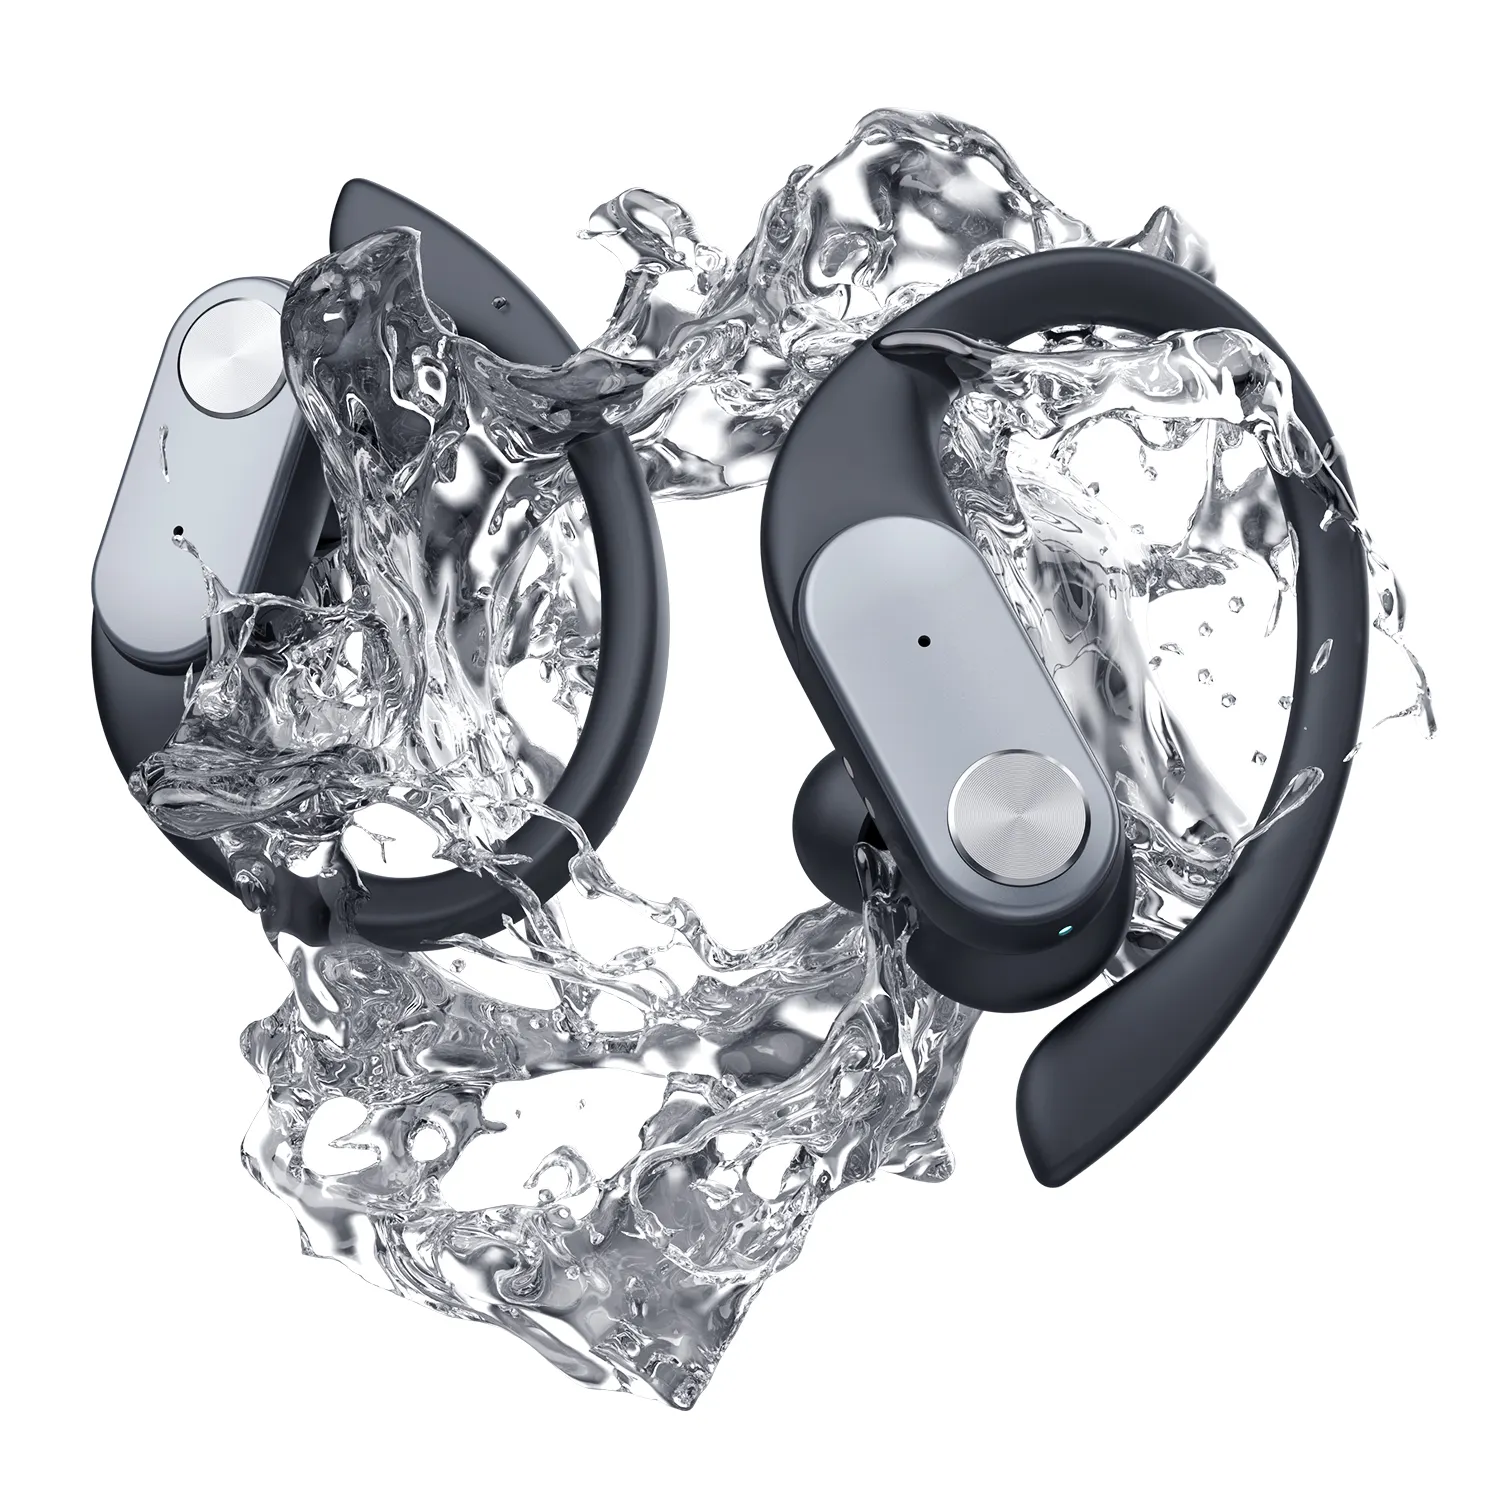 Waterproof Earbuds KINGSTAR Bluetooth Volume Control QCC Mic TWS Earbuds IPX7 Waterproof Cordless Earhook Earphone